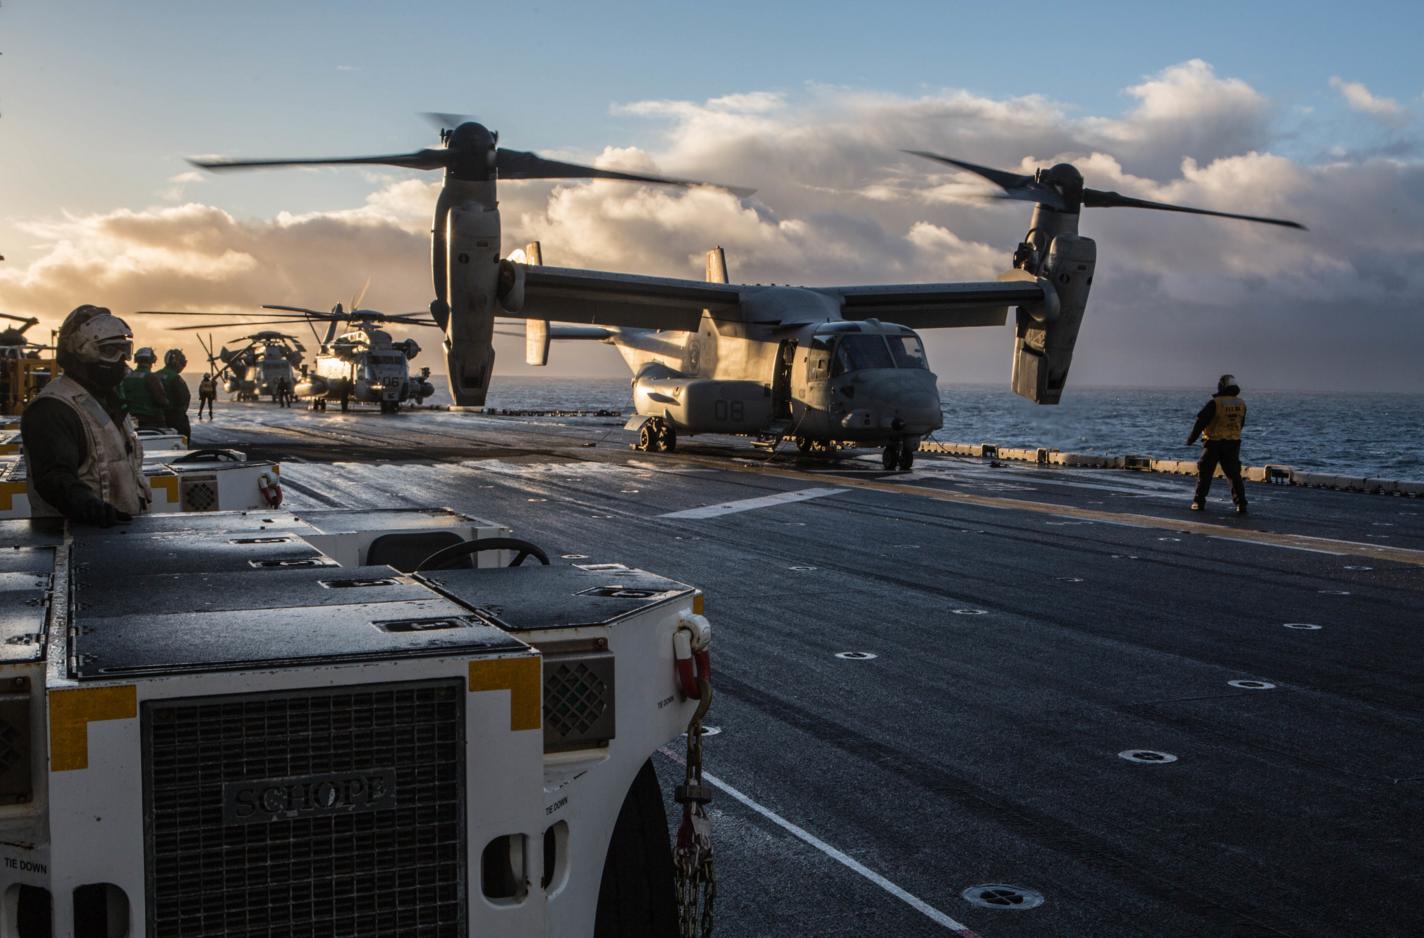 V-22 Osprey и CH-53 Sea Stallion готовятся к взлету с палубы универсального десантного корабля  USS Iwo Jima для высадки десанта в специальной зоне в районе АБ Keflavik, Исландия, фото сделано 17 октября 2018 года в Северной Атлантике (Iwo Jima и размещенные на нем подразделения 24-й экспедиционной бригады американской морской пехоты готовятся к участию в учении Trident Juncture 2018)